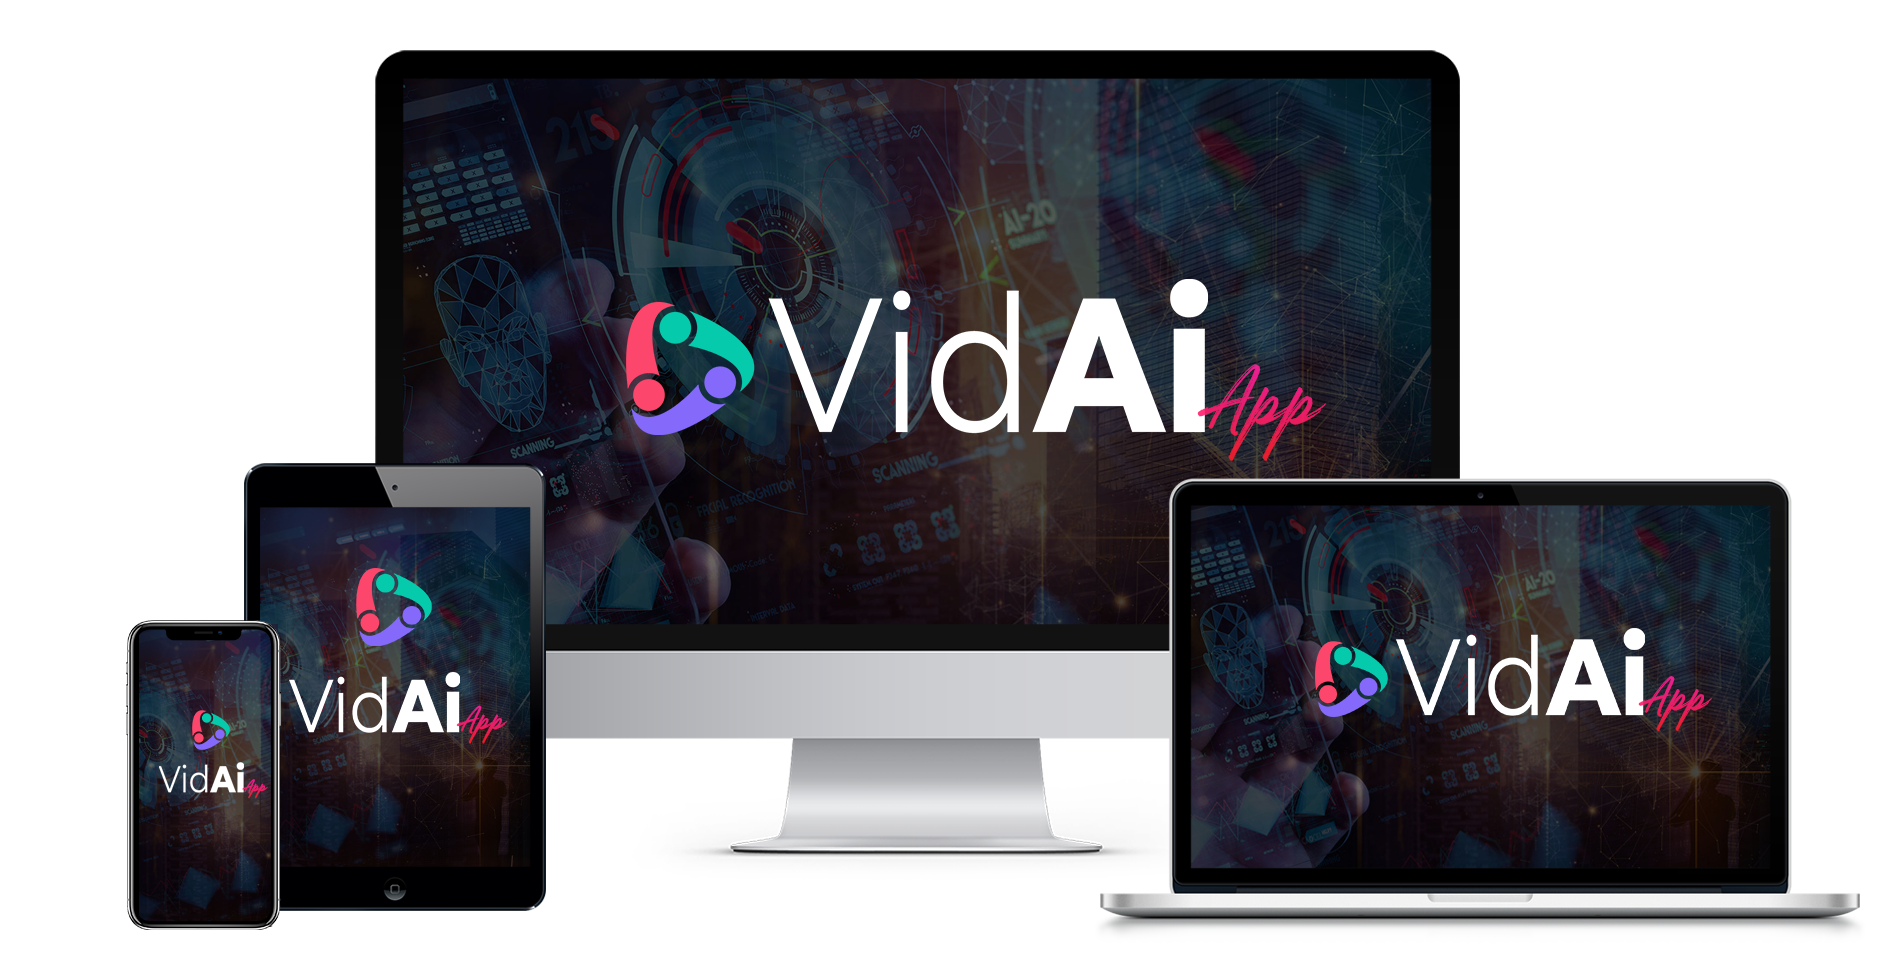 VidAI Review